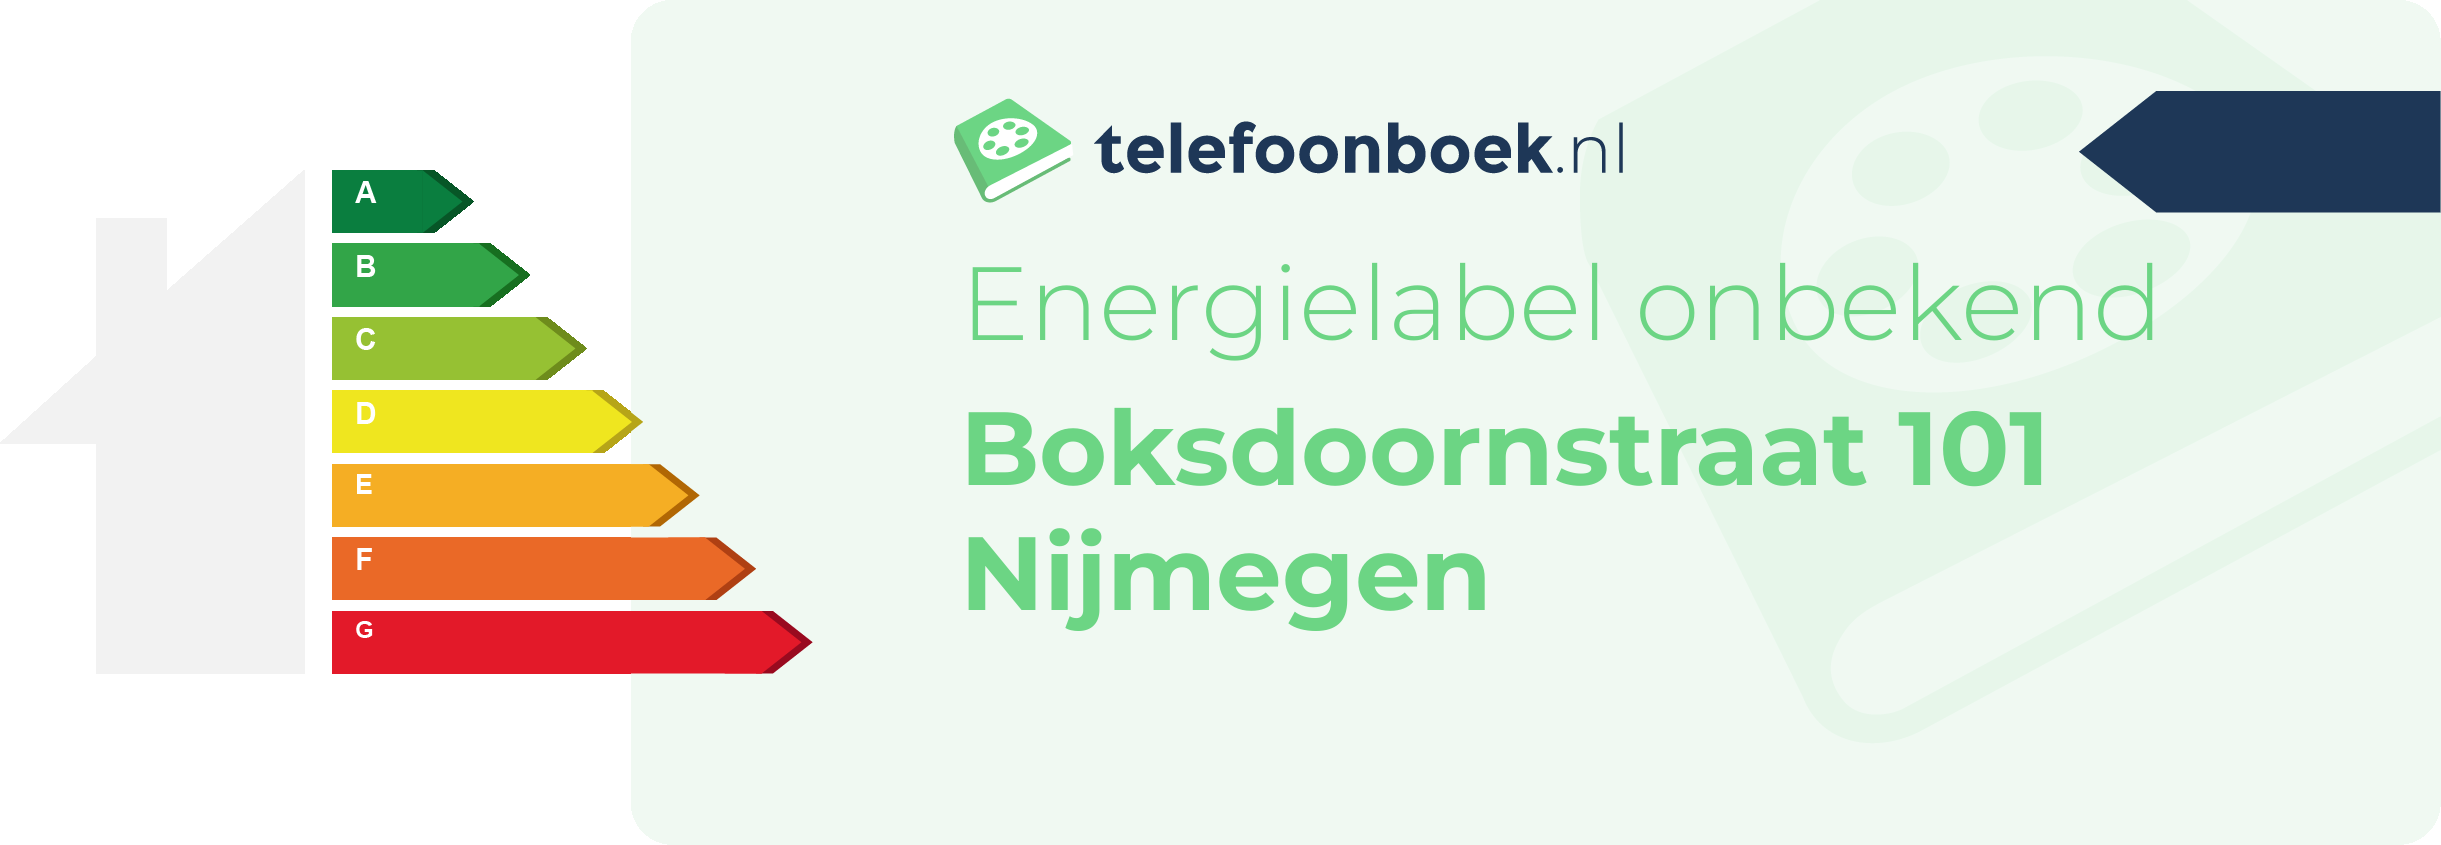 Energielabel Boksdoornstraat 101 Nijmegen